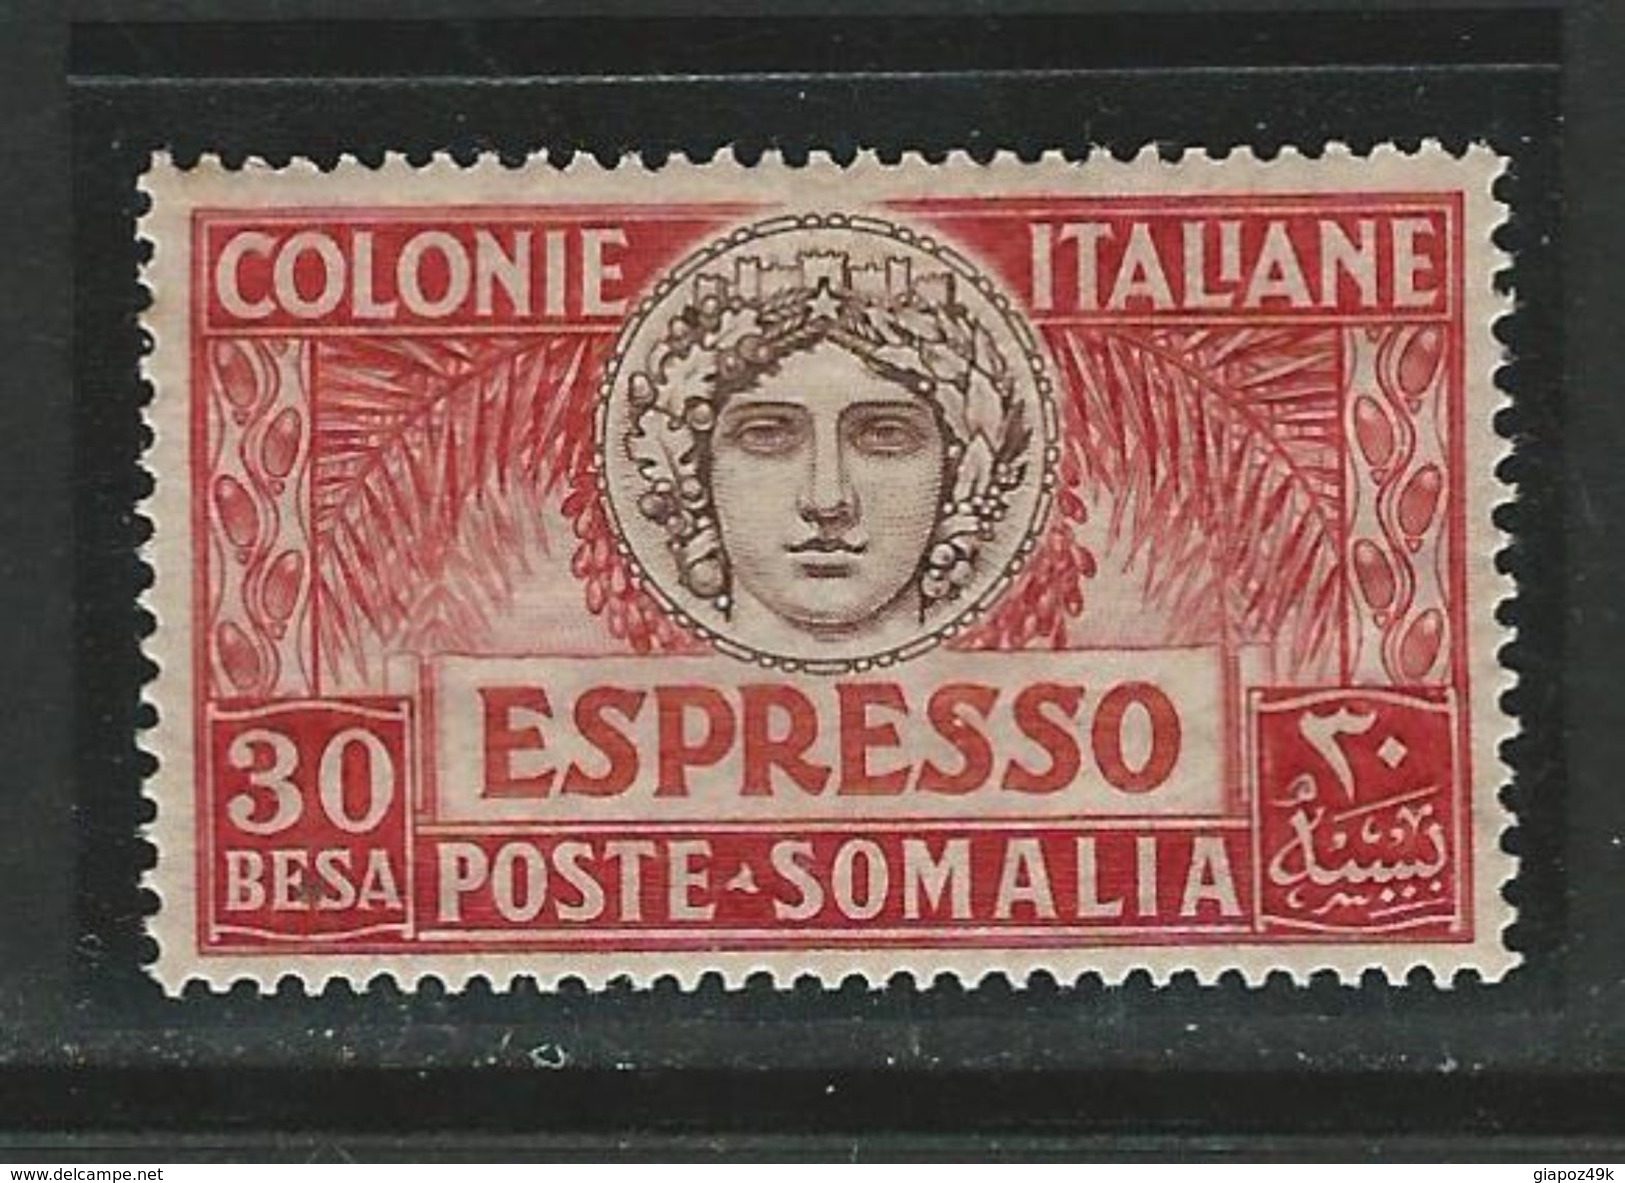 ITALIA REGNO - SOMALIA 1924 - ESPRESSI N. 3 Nuovo * - Cat. 15 € - Lotto 1820 B - Somalia